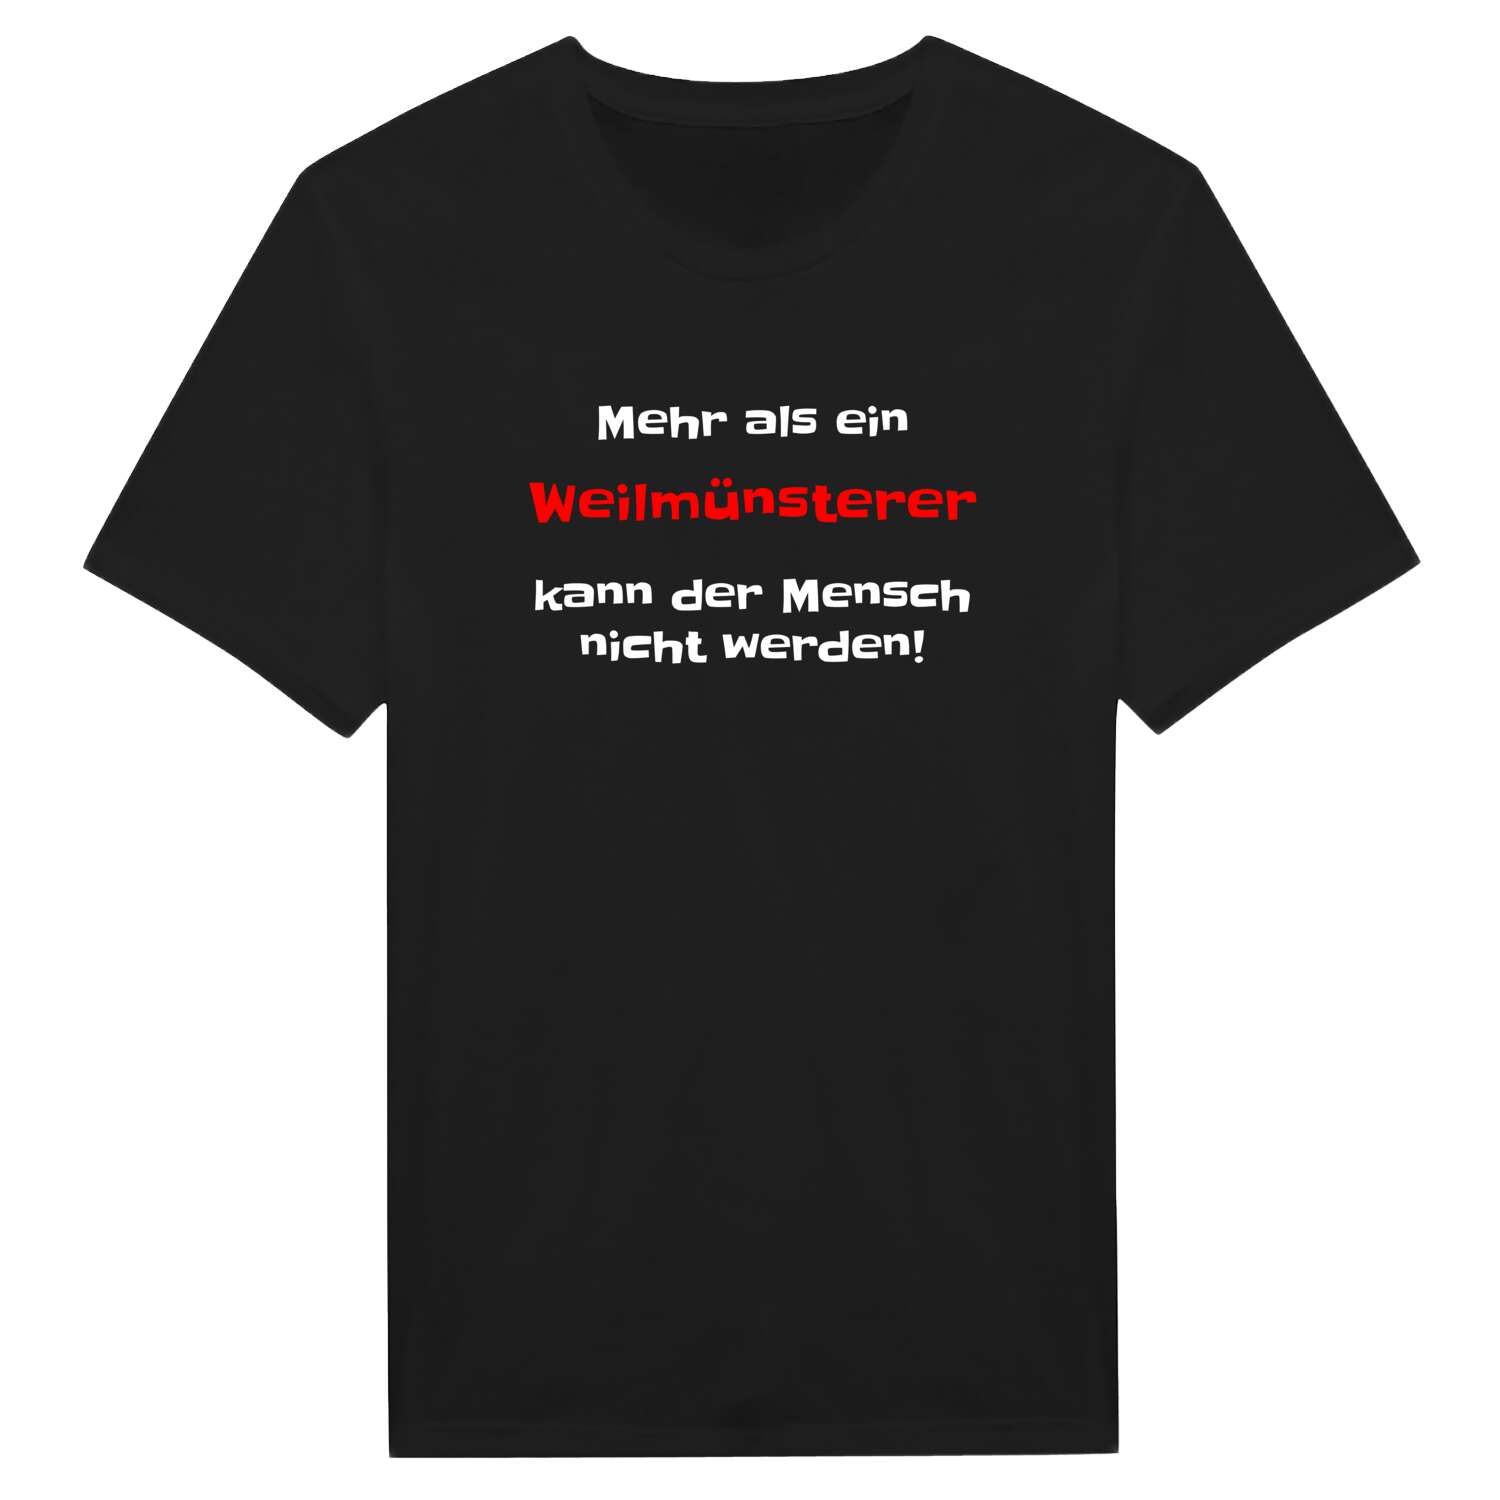 Weilmünster T-Shirt »Mehr als ein«